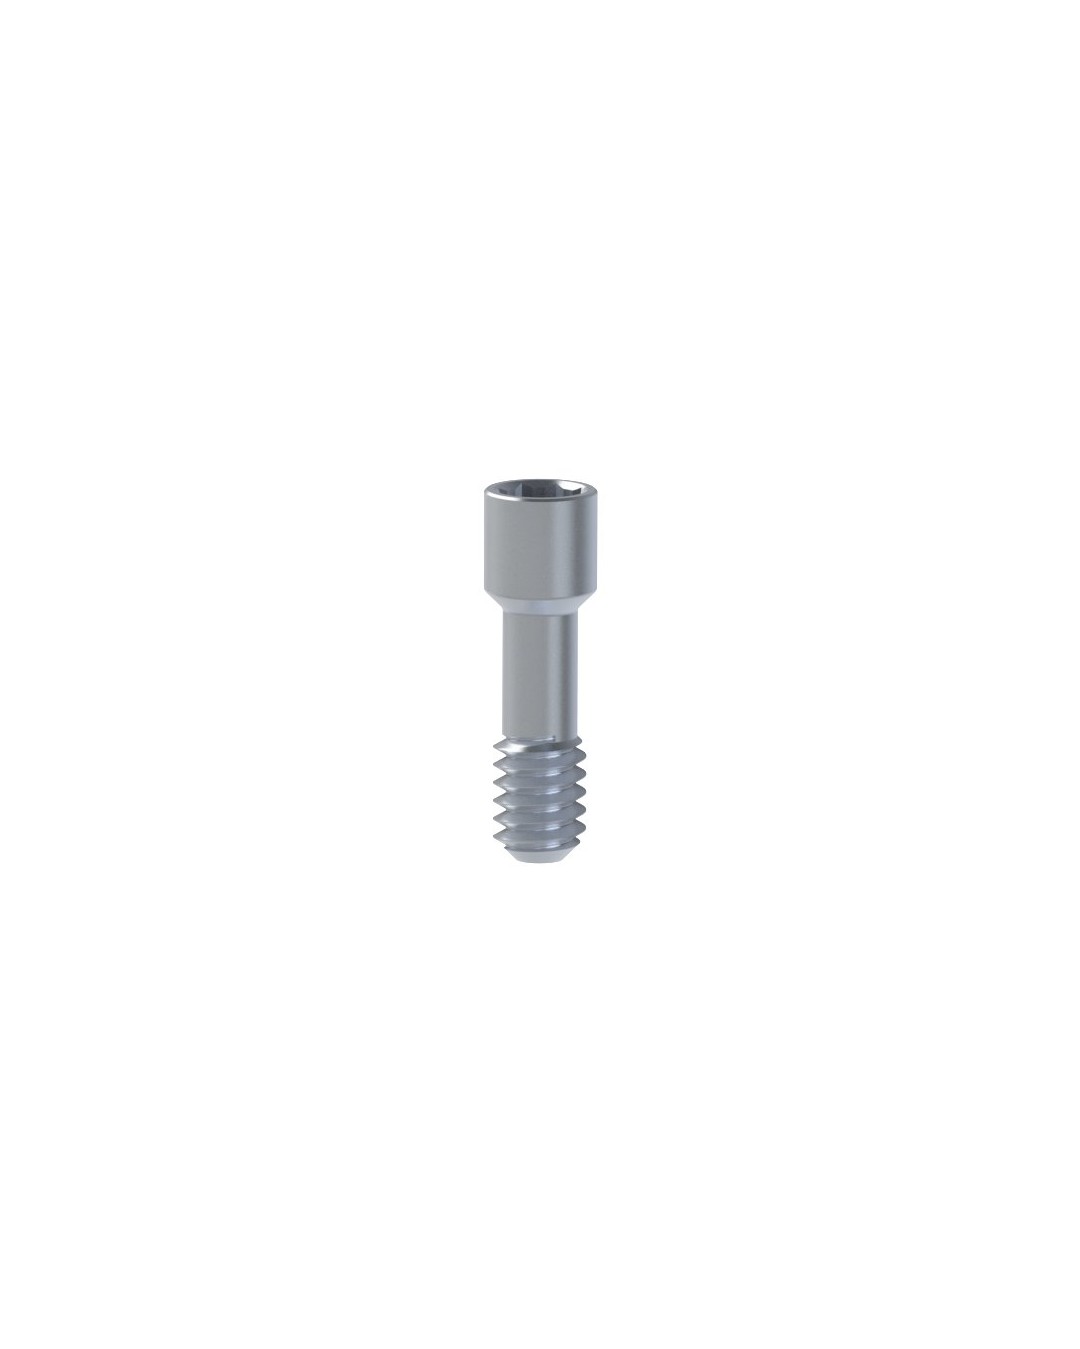 Titanium Screw compatible with Klockner® Essential Cone®